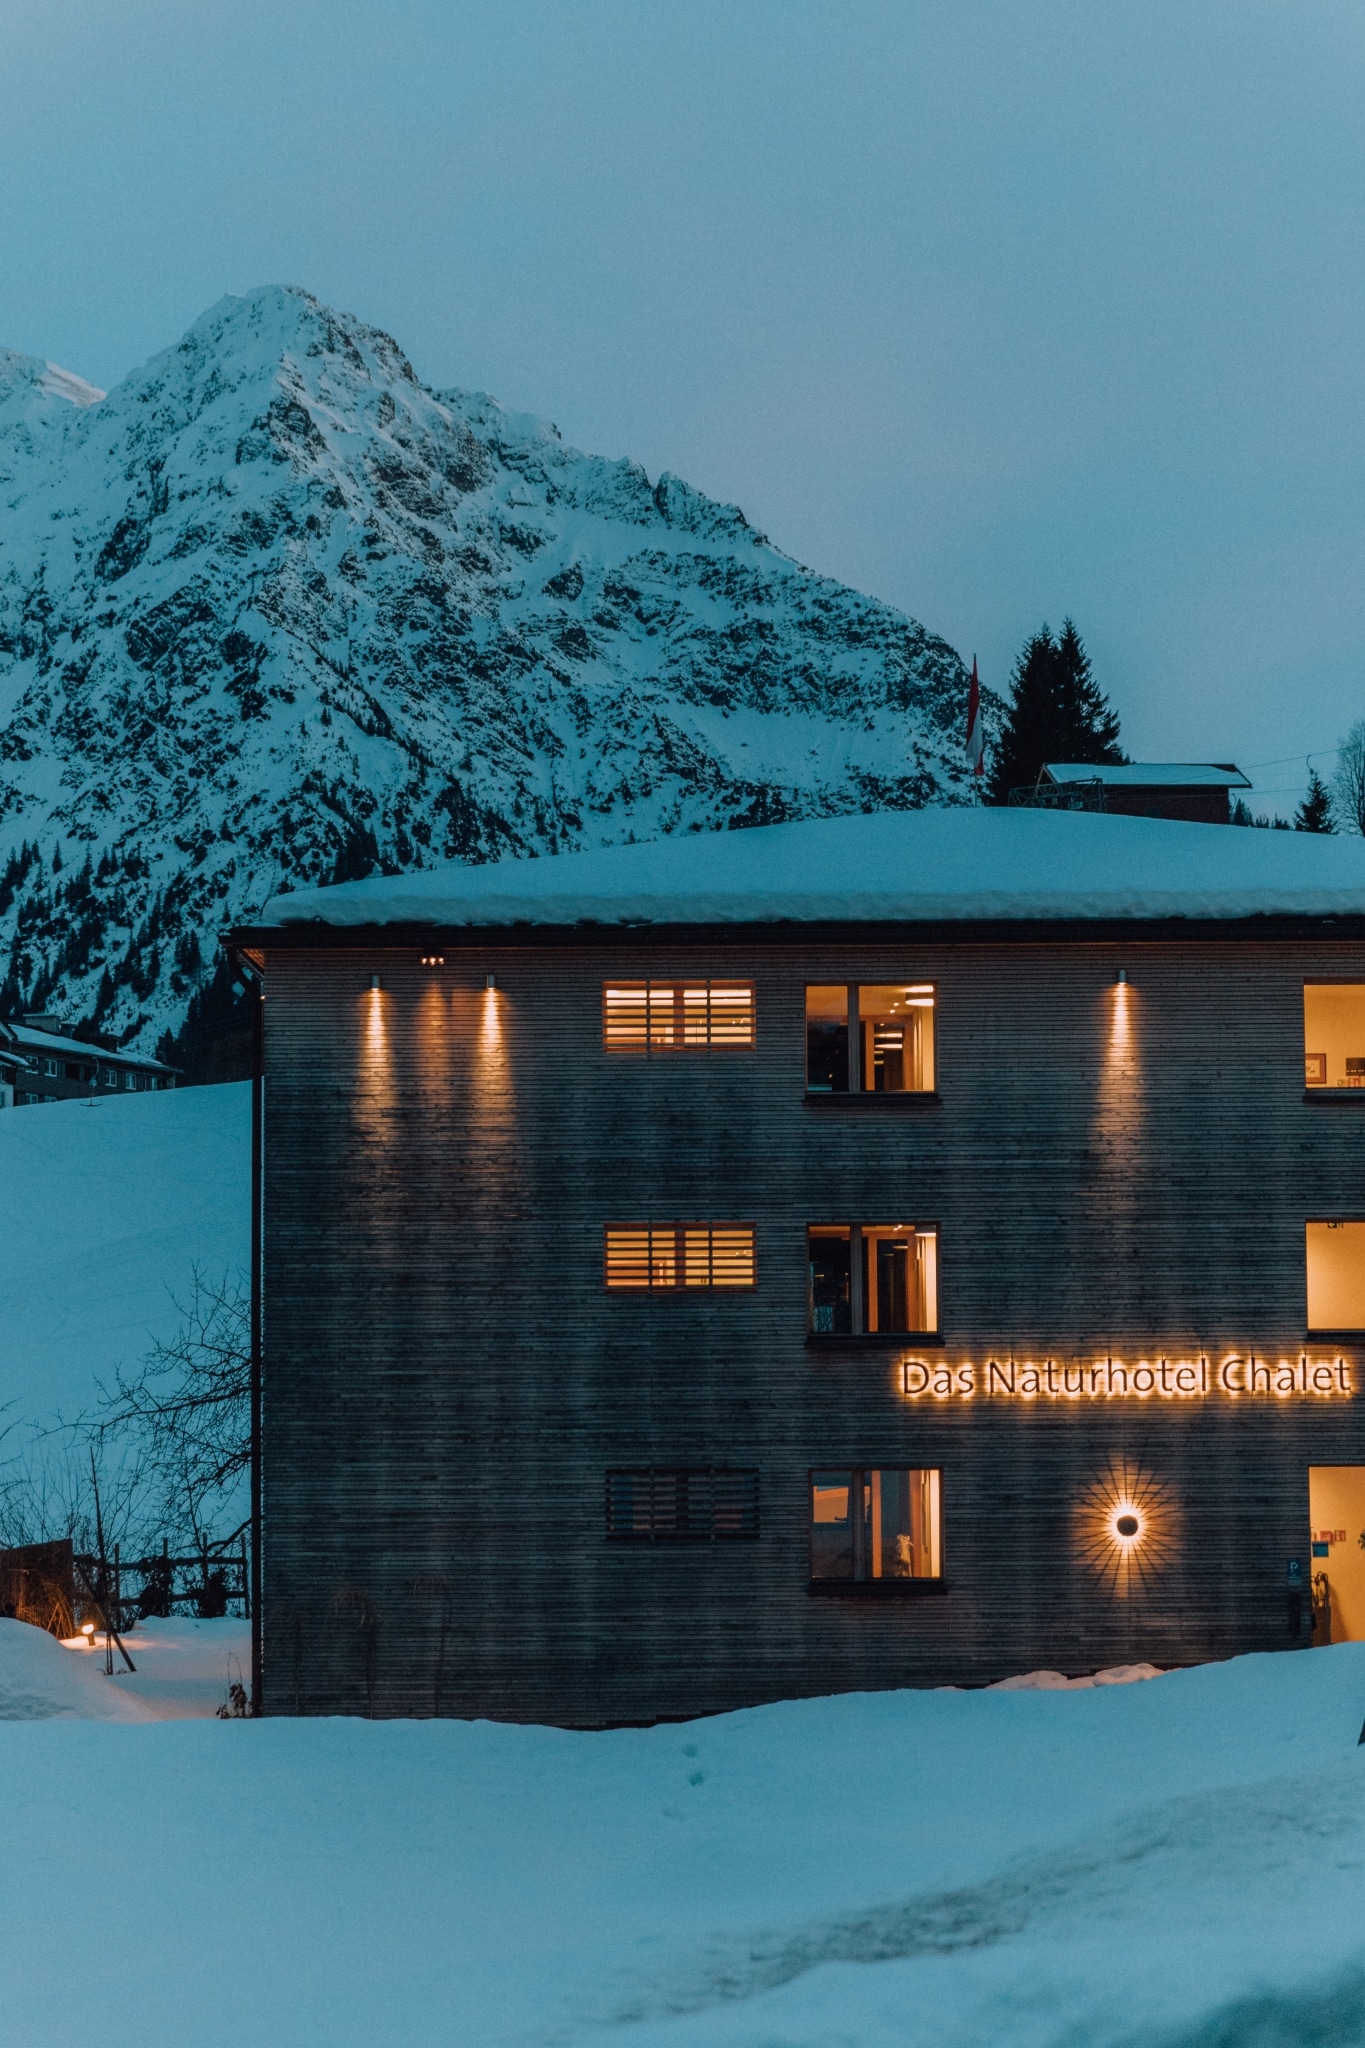 Das Naturhotel Chalet eingebettet in verschneite Winterlandschaft.